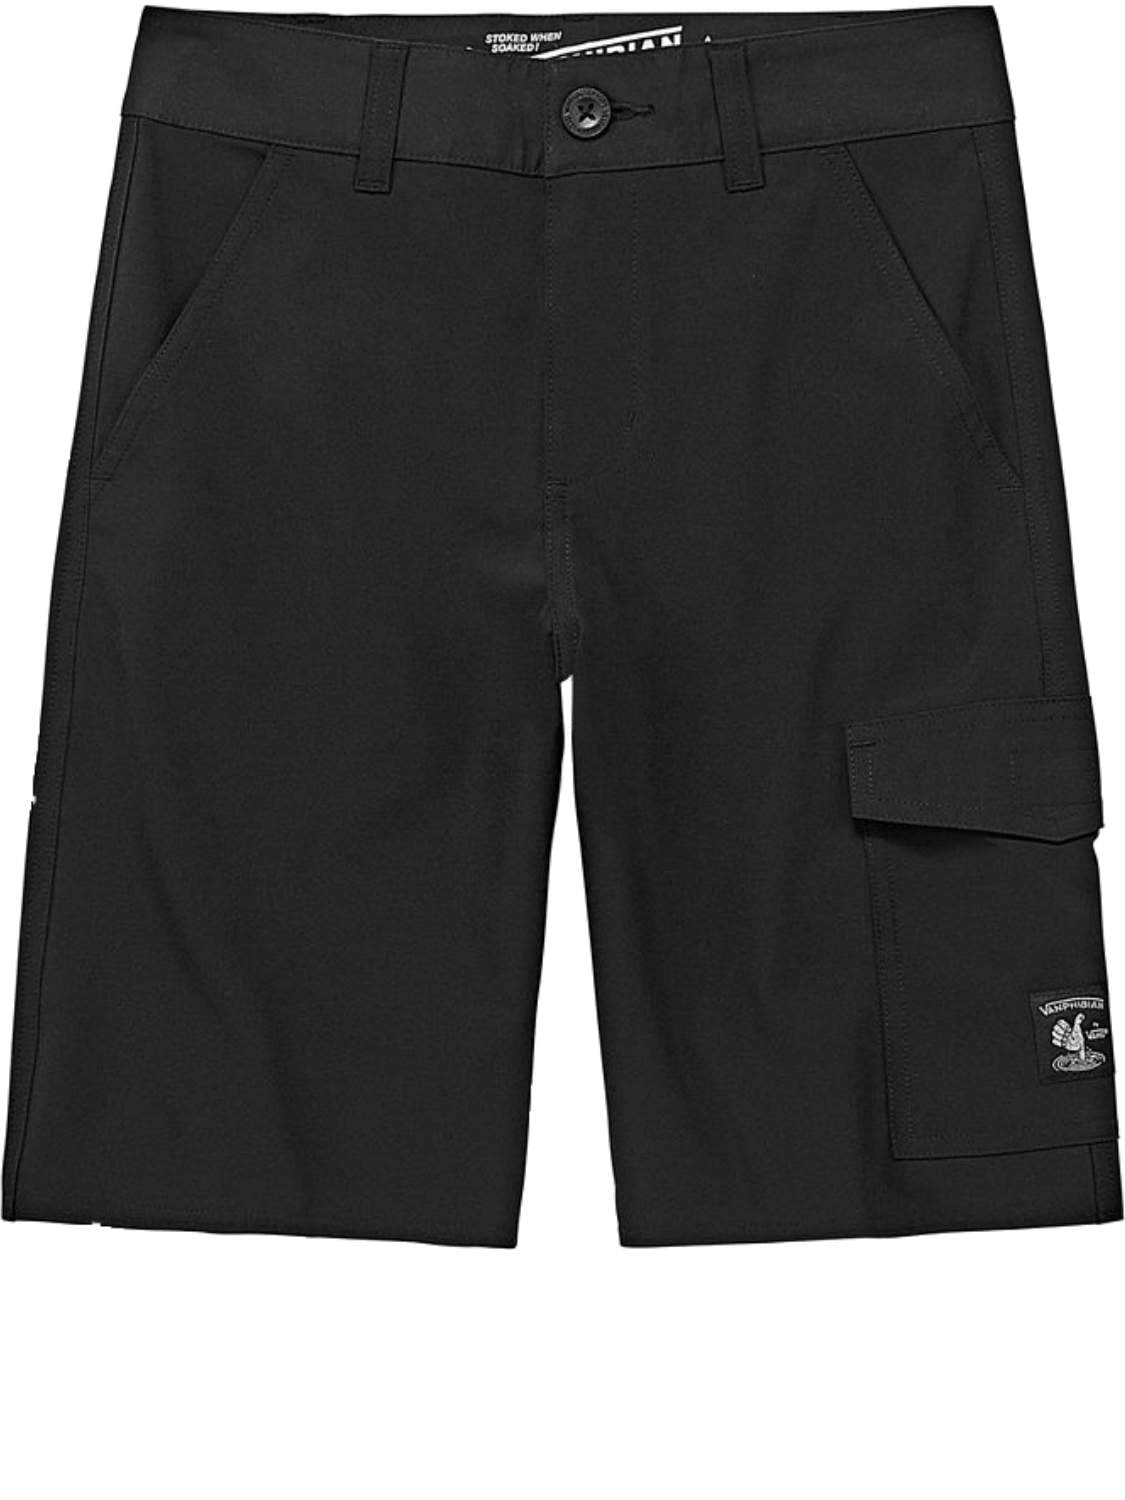 vanphibian shorts 34